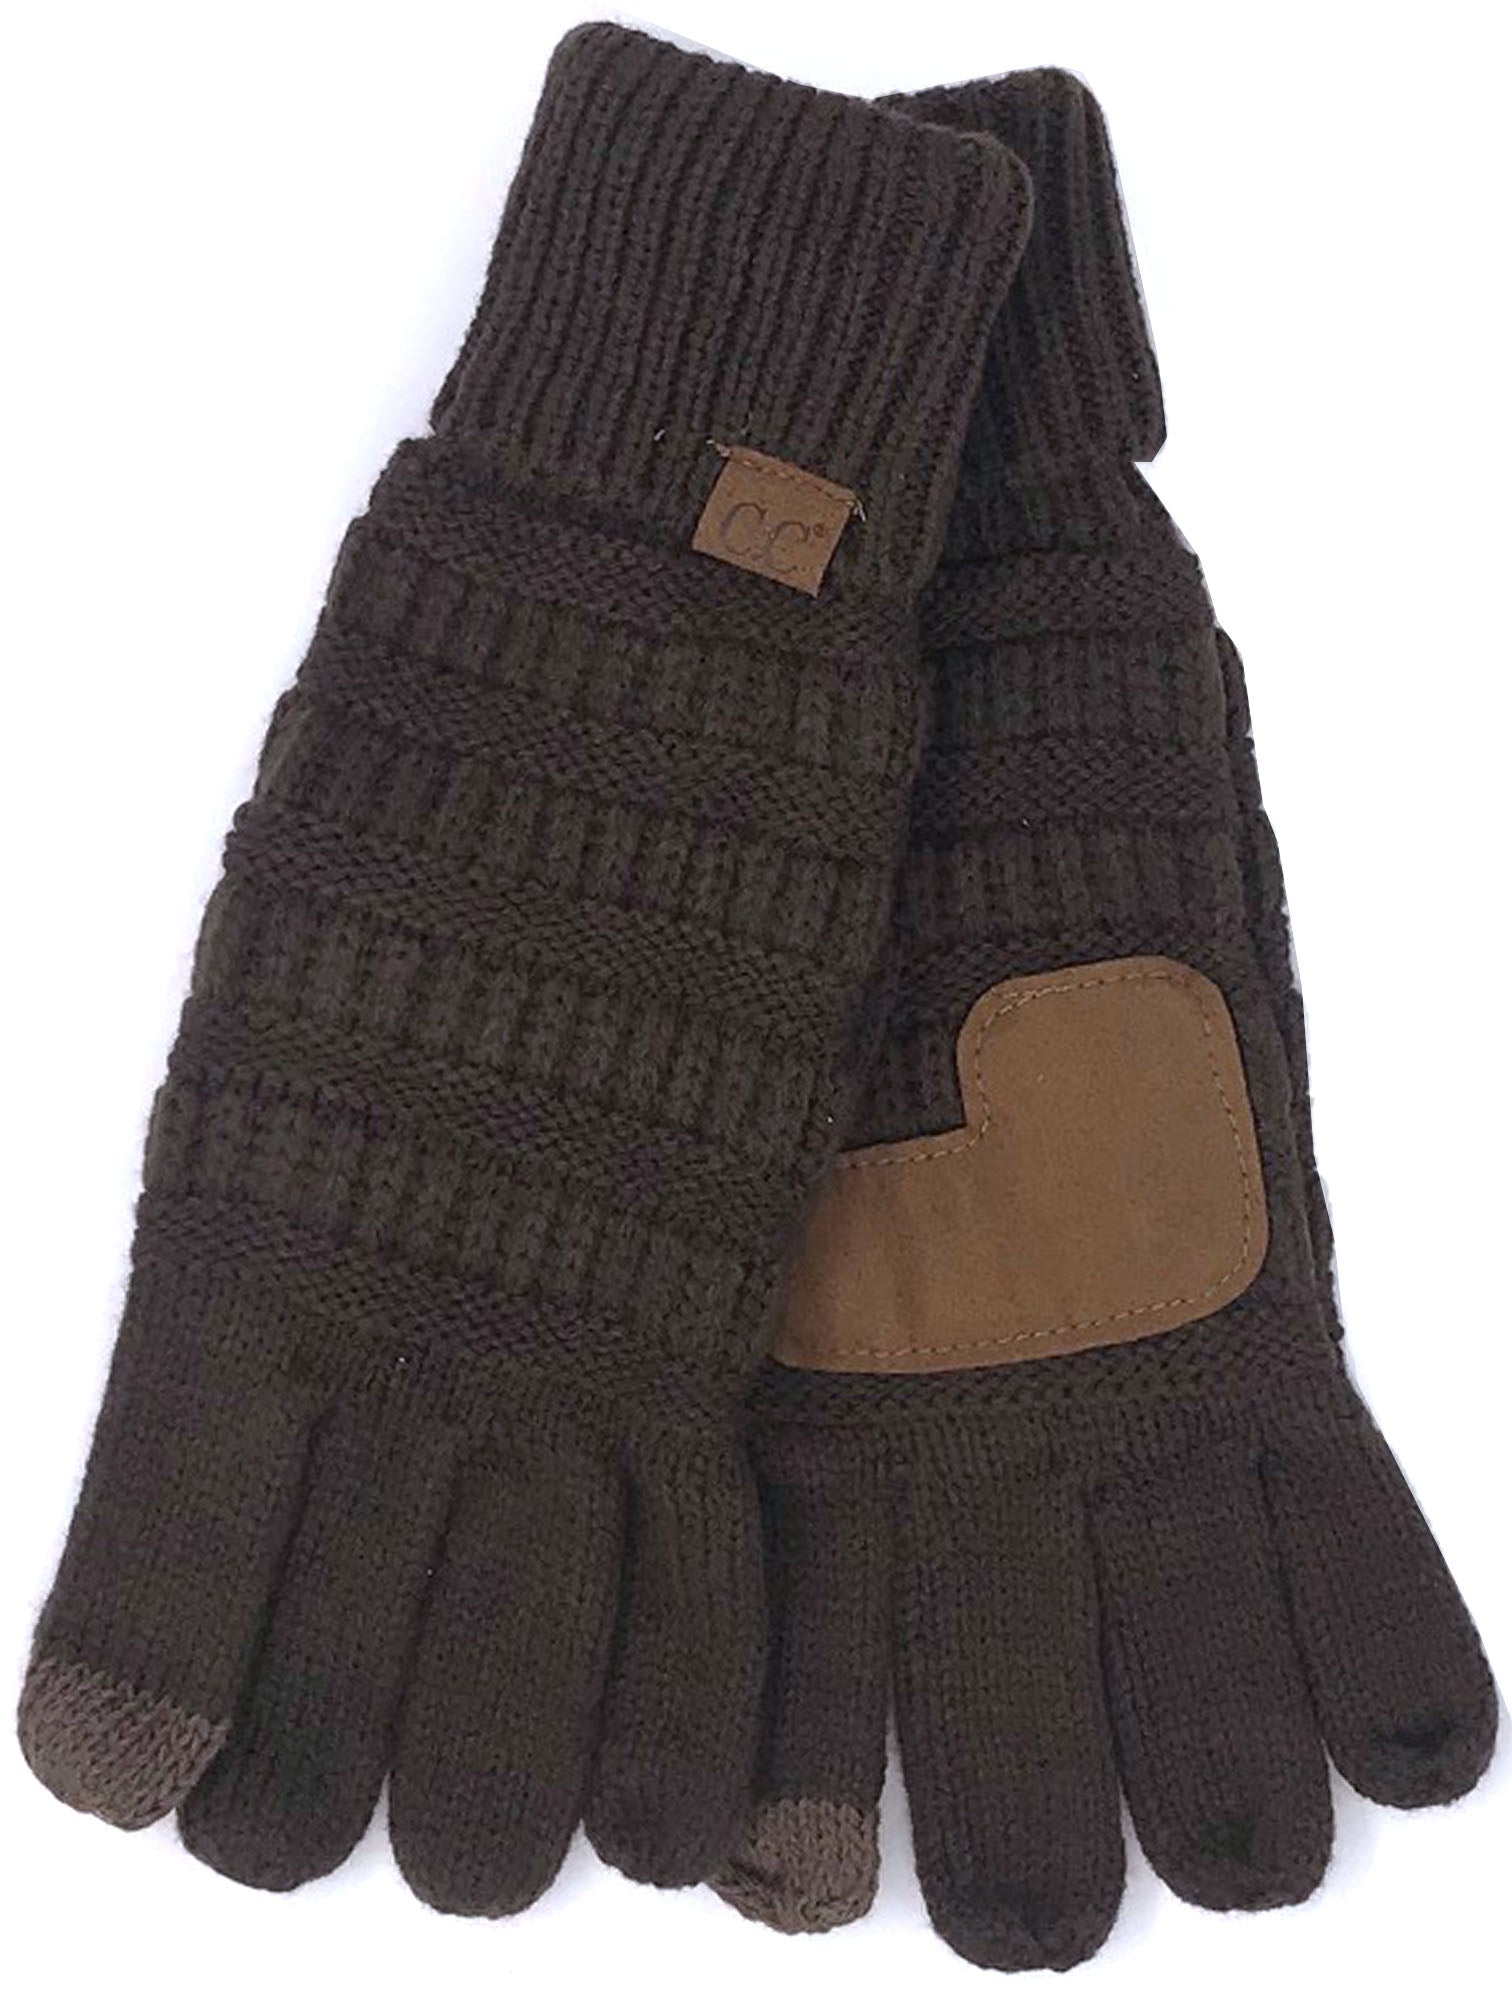 G-20 C.C Brown Gloves